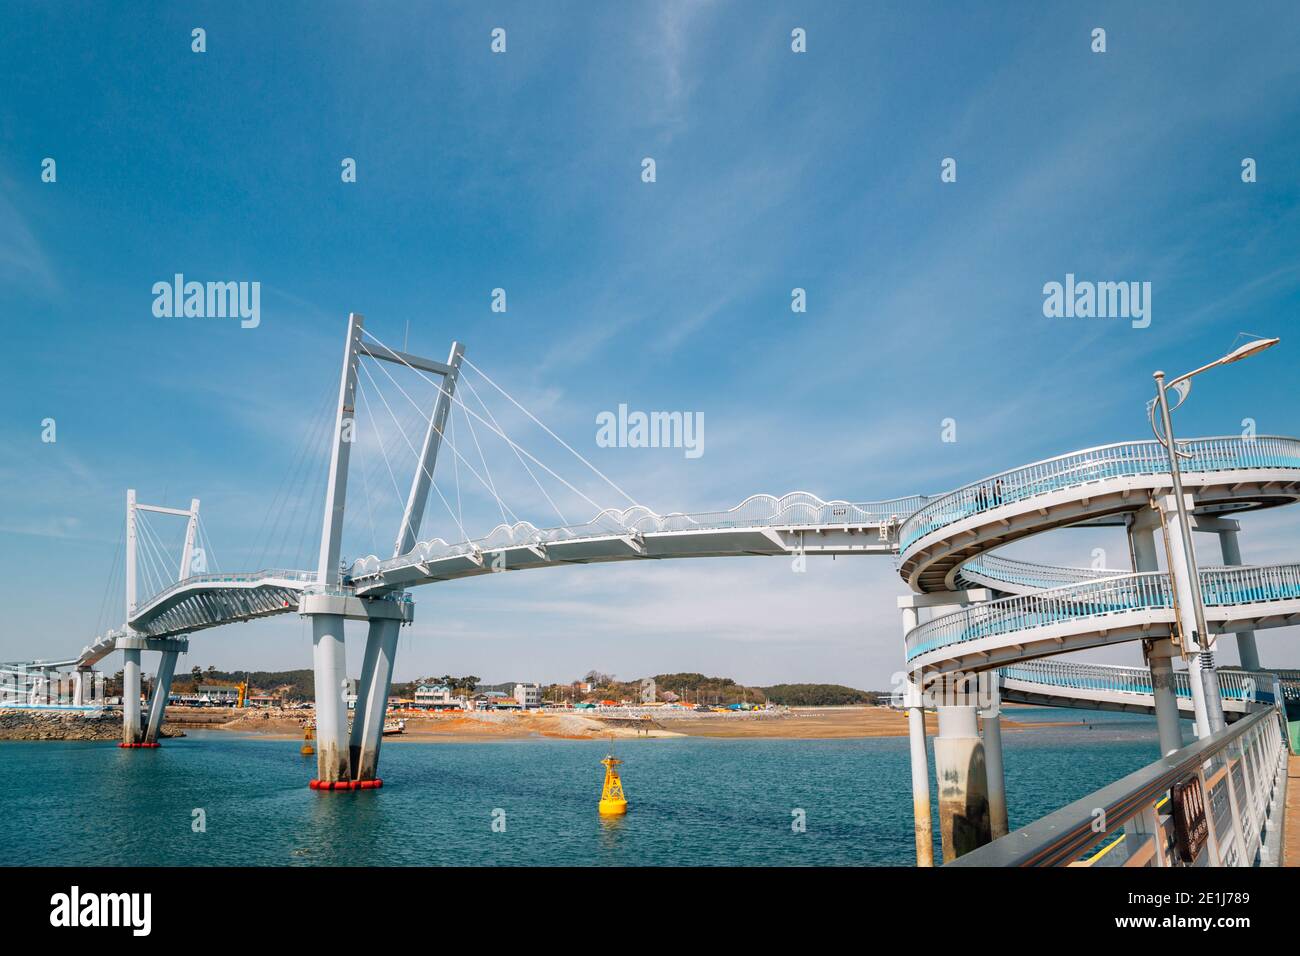 kkotge(Blue crab) bridge at BaeksaJang port in Anmyeondo Island, Taean,  Korea Stock Photo - Alamy